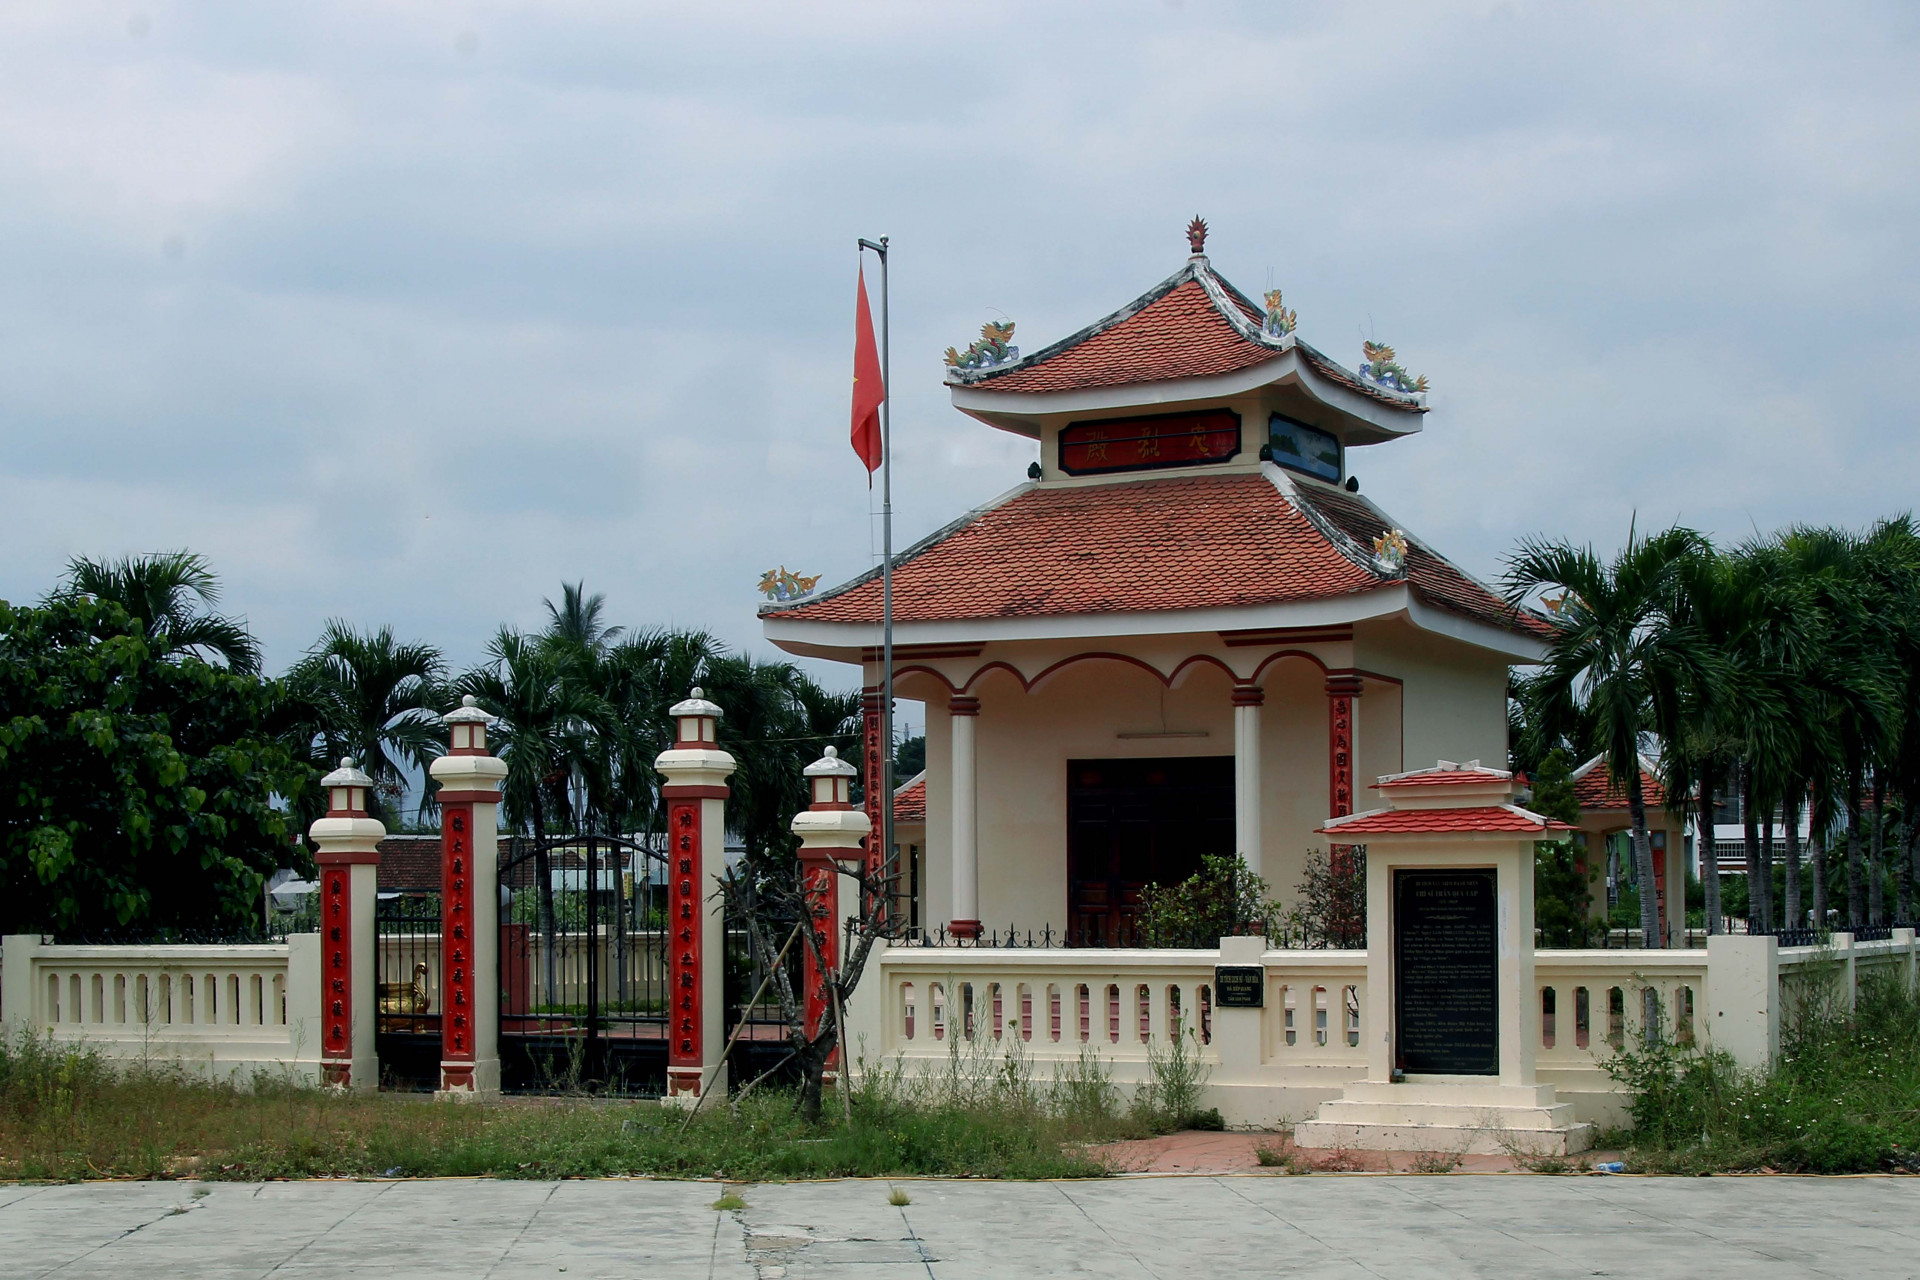 Đền thờ chí sĩ Trần Quý Cáp được nhân dân Khánh Hòa xây dựng năm 1970 tại nơi ông qua đời, ở đầu cầu sông Cạn huyện Diên Khánh, được xếp hạng di tích văn hóa, lịch sử vào ngày 30/8/1991.